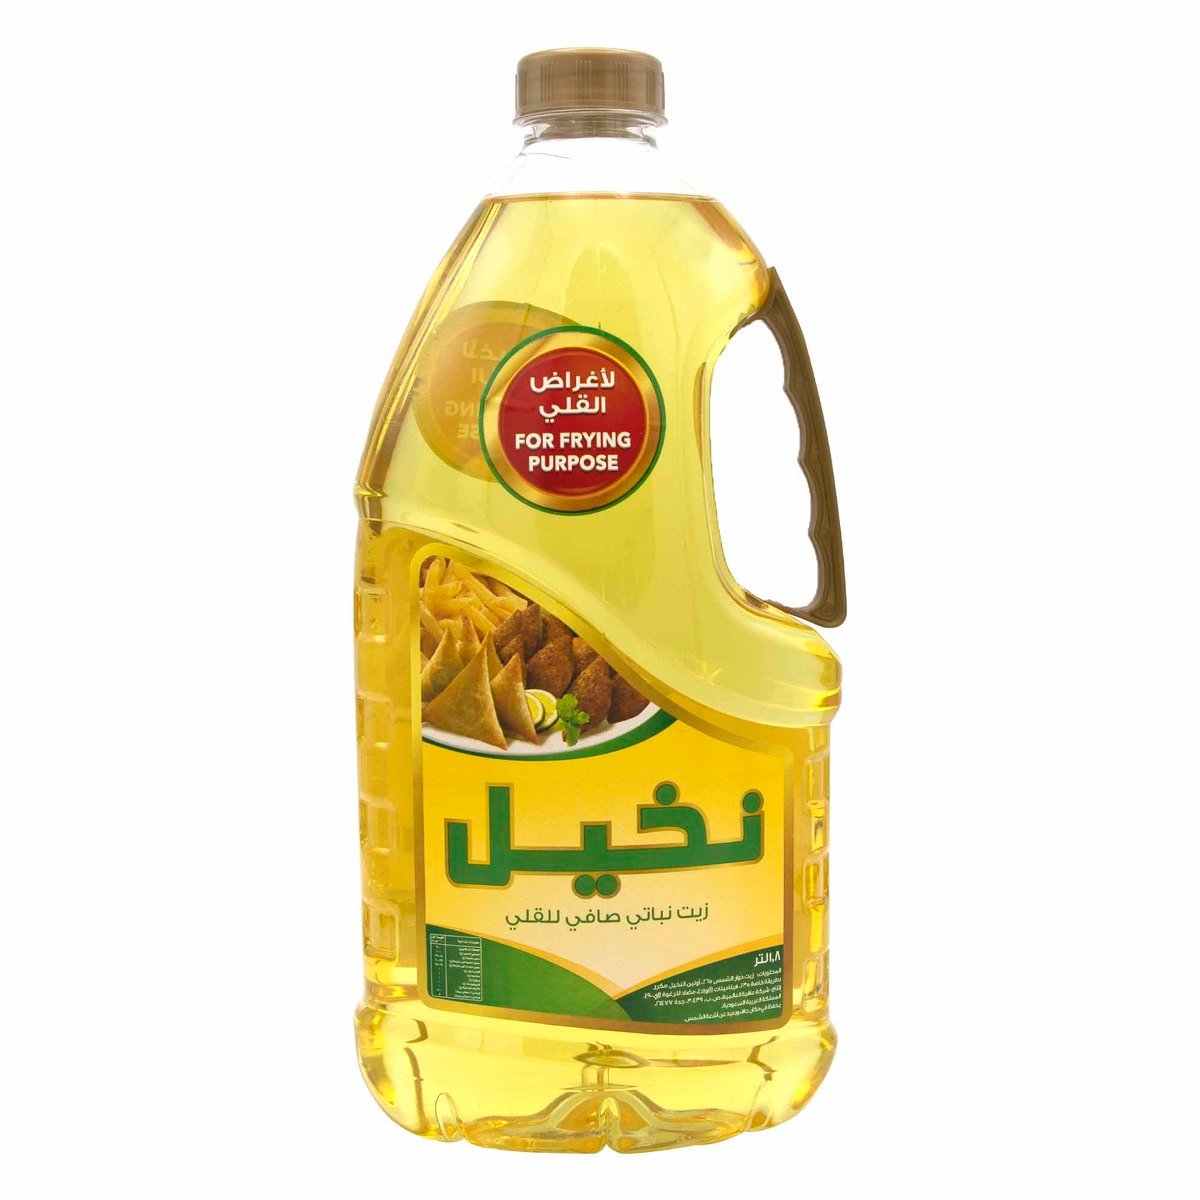 Nakheel Pure Vegetable Oil 1.8Litre